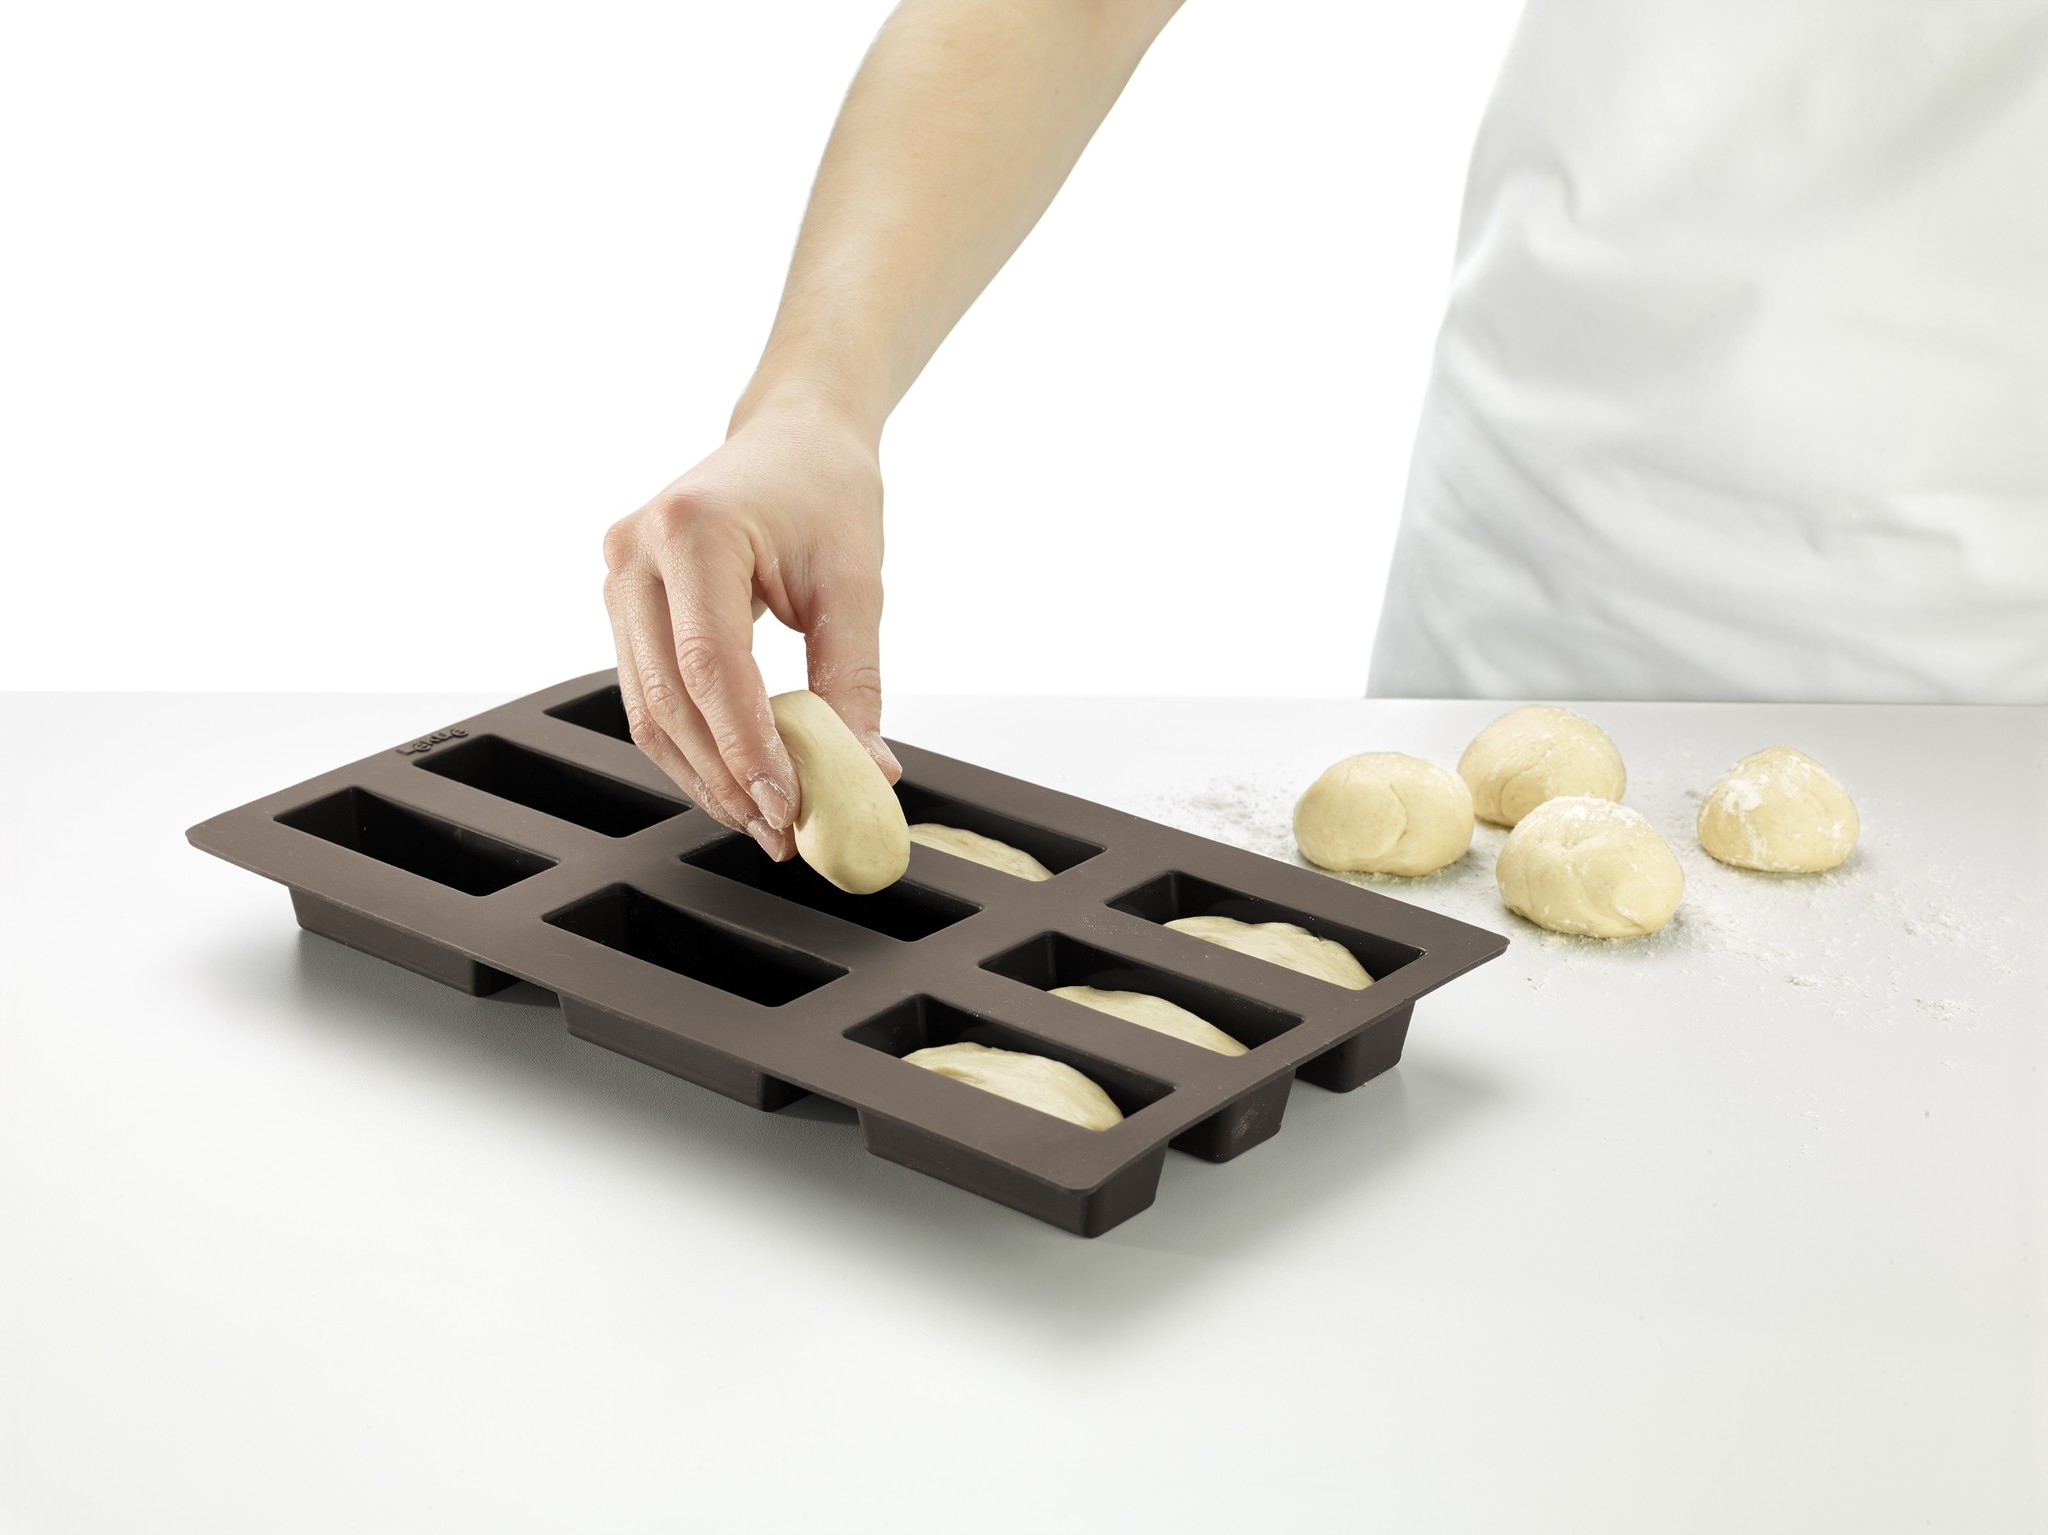 Rondsel munt wij Lékué bakvorm uit silicone voor 9 rechthoekige mini broodjes kopen? -  Broodbakshop.nl